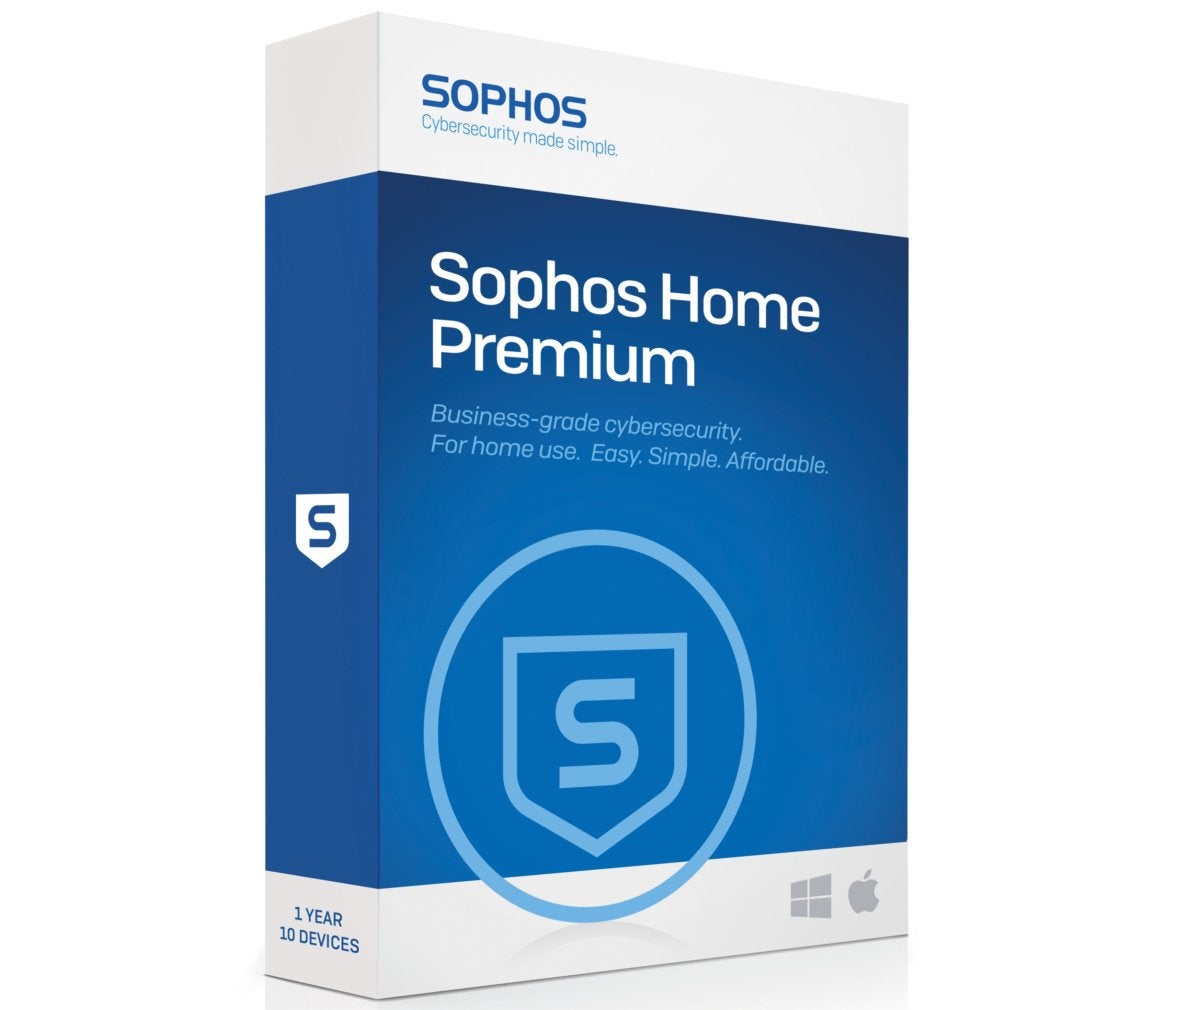 sophos home review reddit